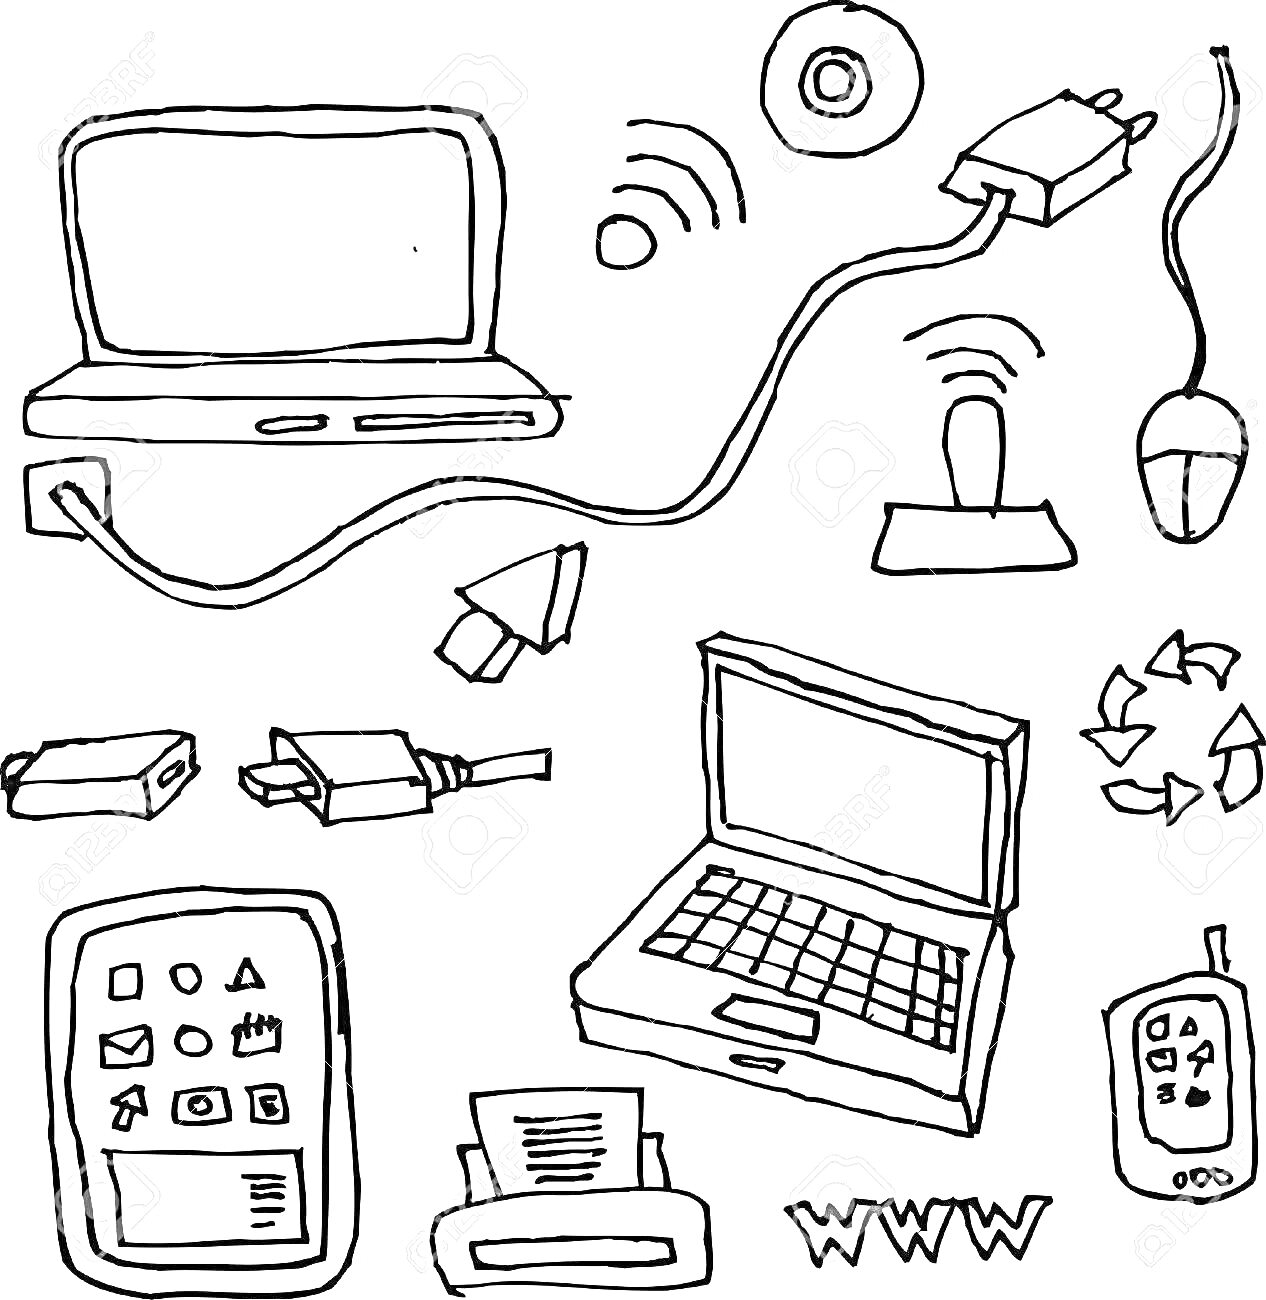 На раскраске изображено: Ноутбук, Телефон, Мышь, Роутер, Разъёмы, Монитор, Принтер, Интернет, Гаджеты